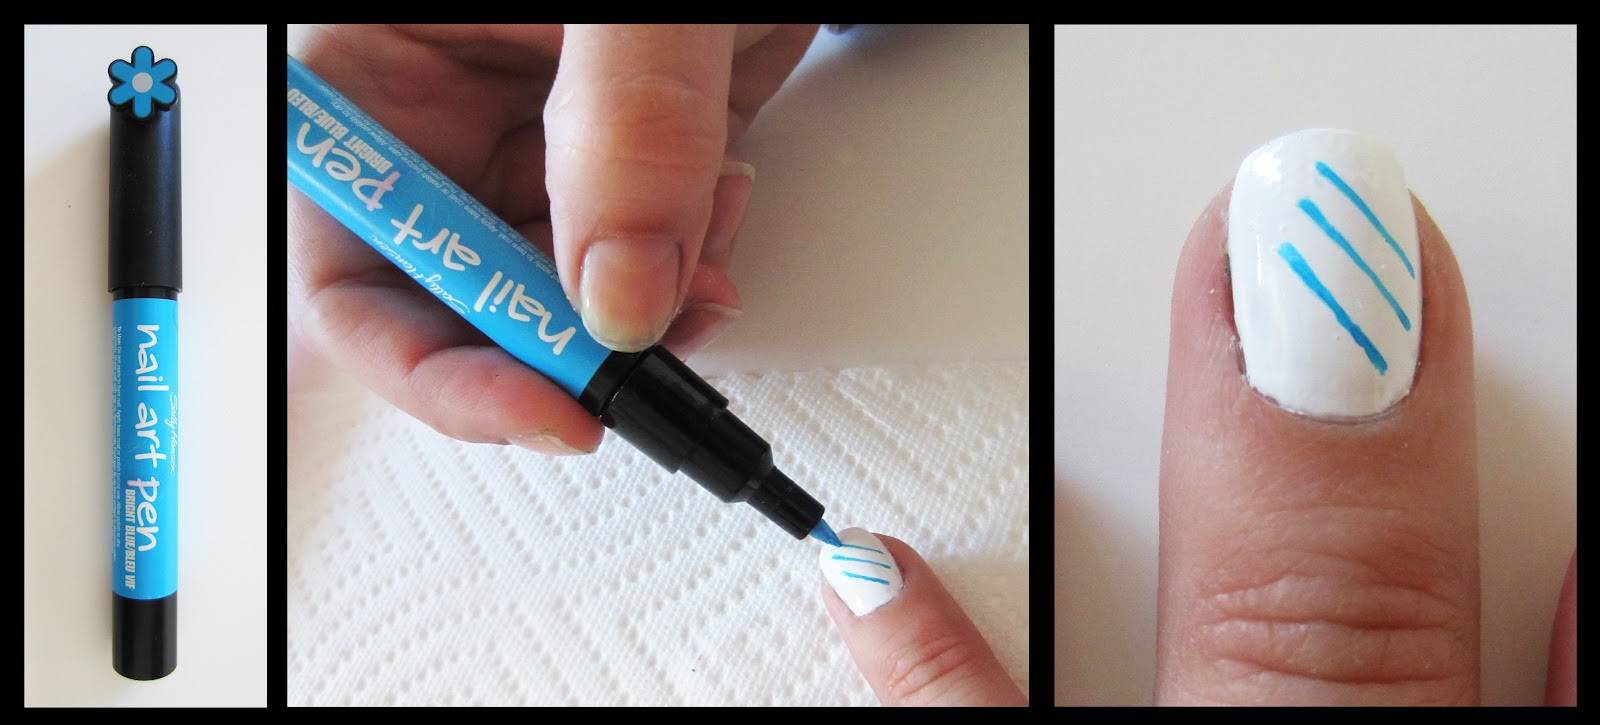 Нейл-арт с помощью гелевой ручки. как делать миниатюрные шедевры на ногтях гелевой ручкой дизайн ногтей с помощью гелевых ручек